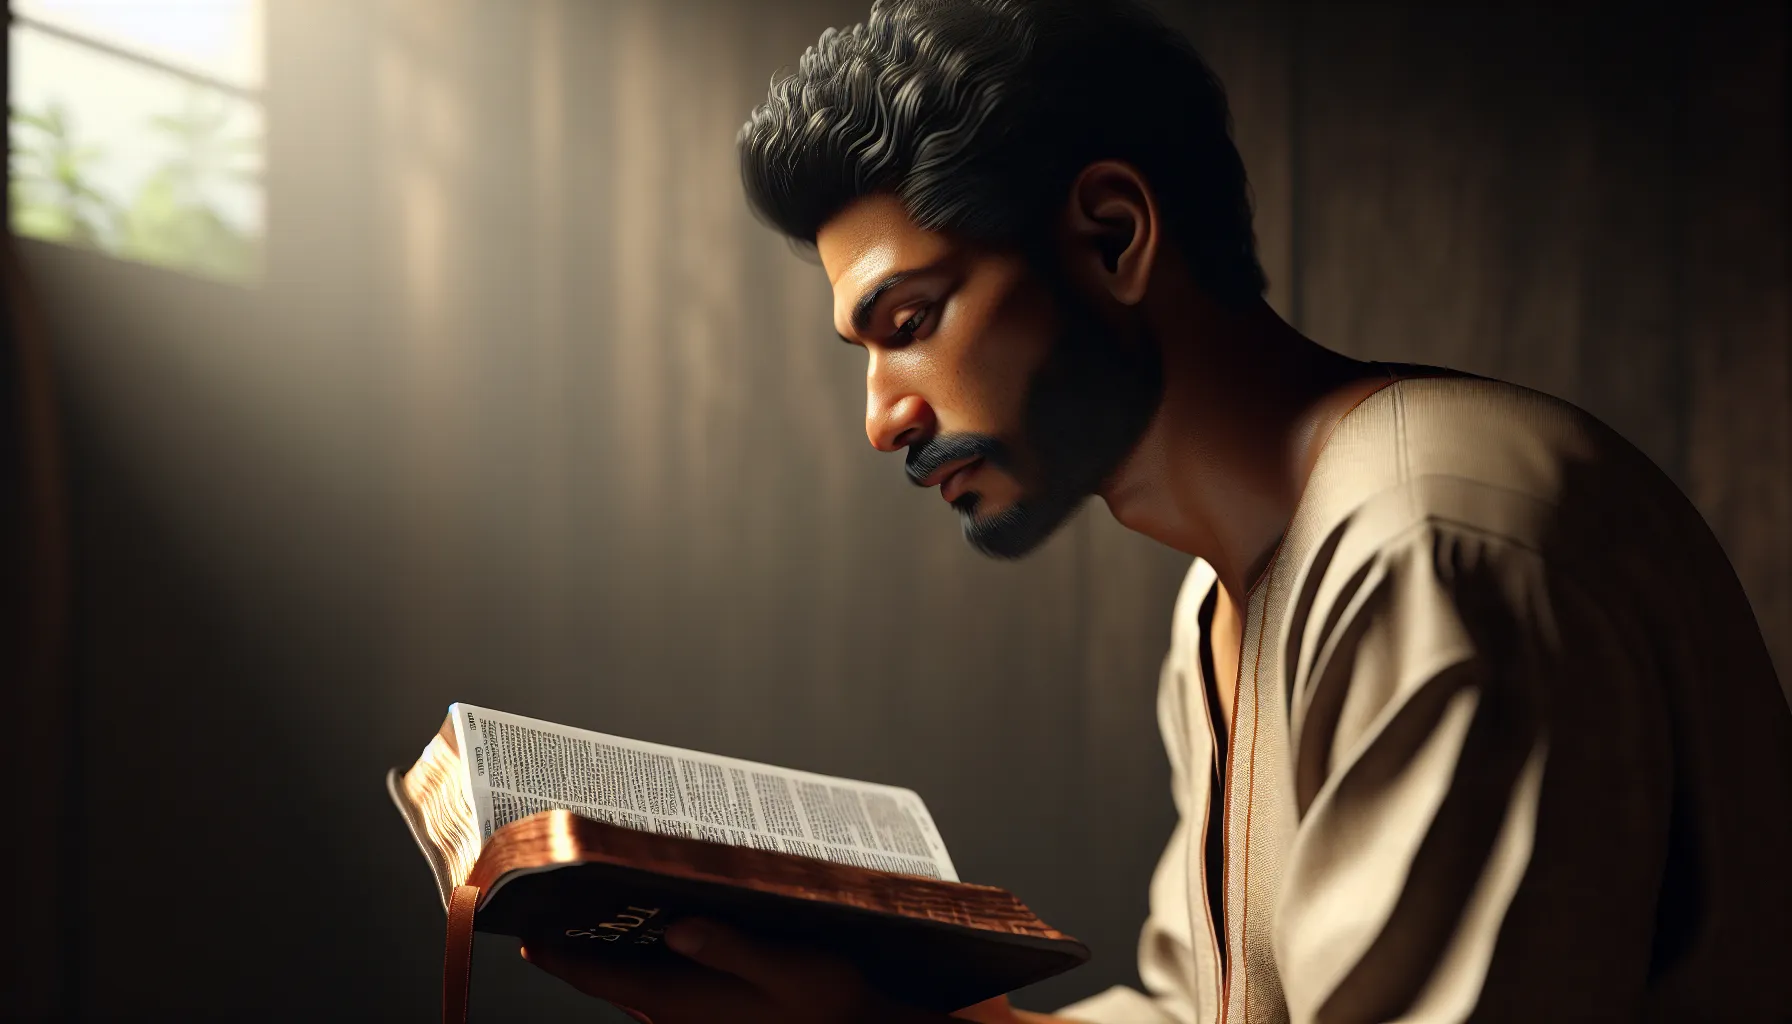 Imagen de un hombre contemplativo leyendo la Biblia, representando las lecciones de vida que podemos aprender de Saúl en la Biblia.